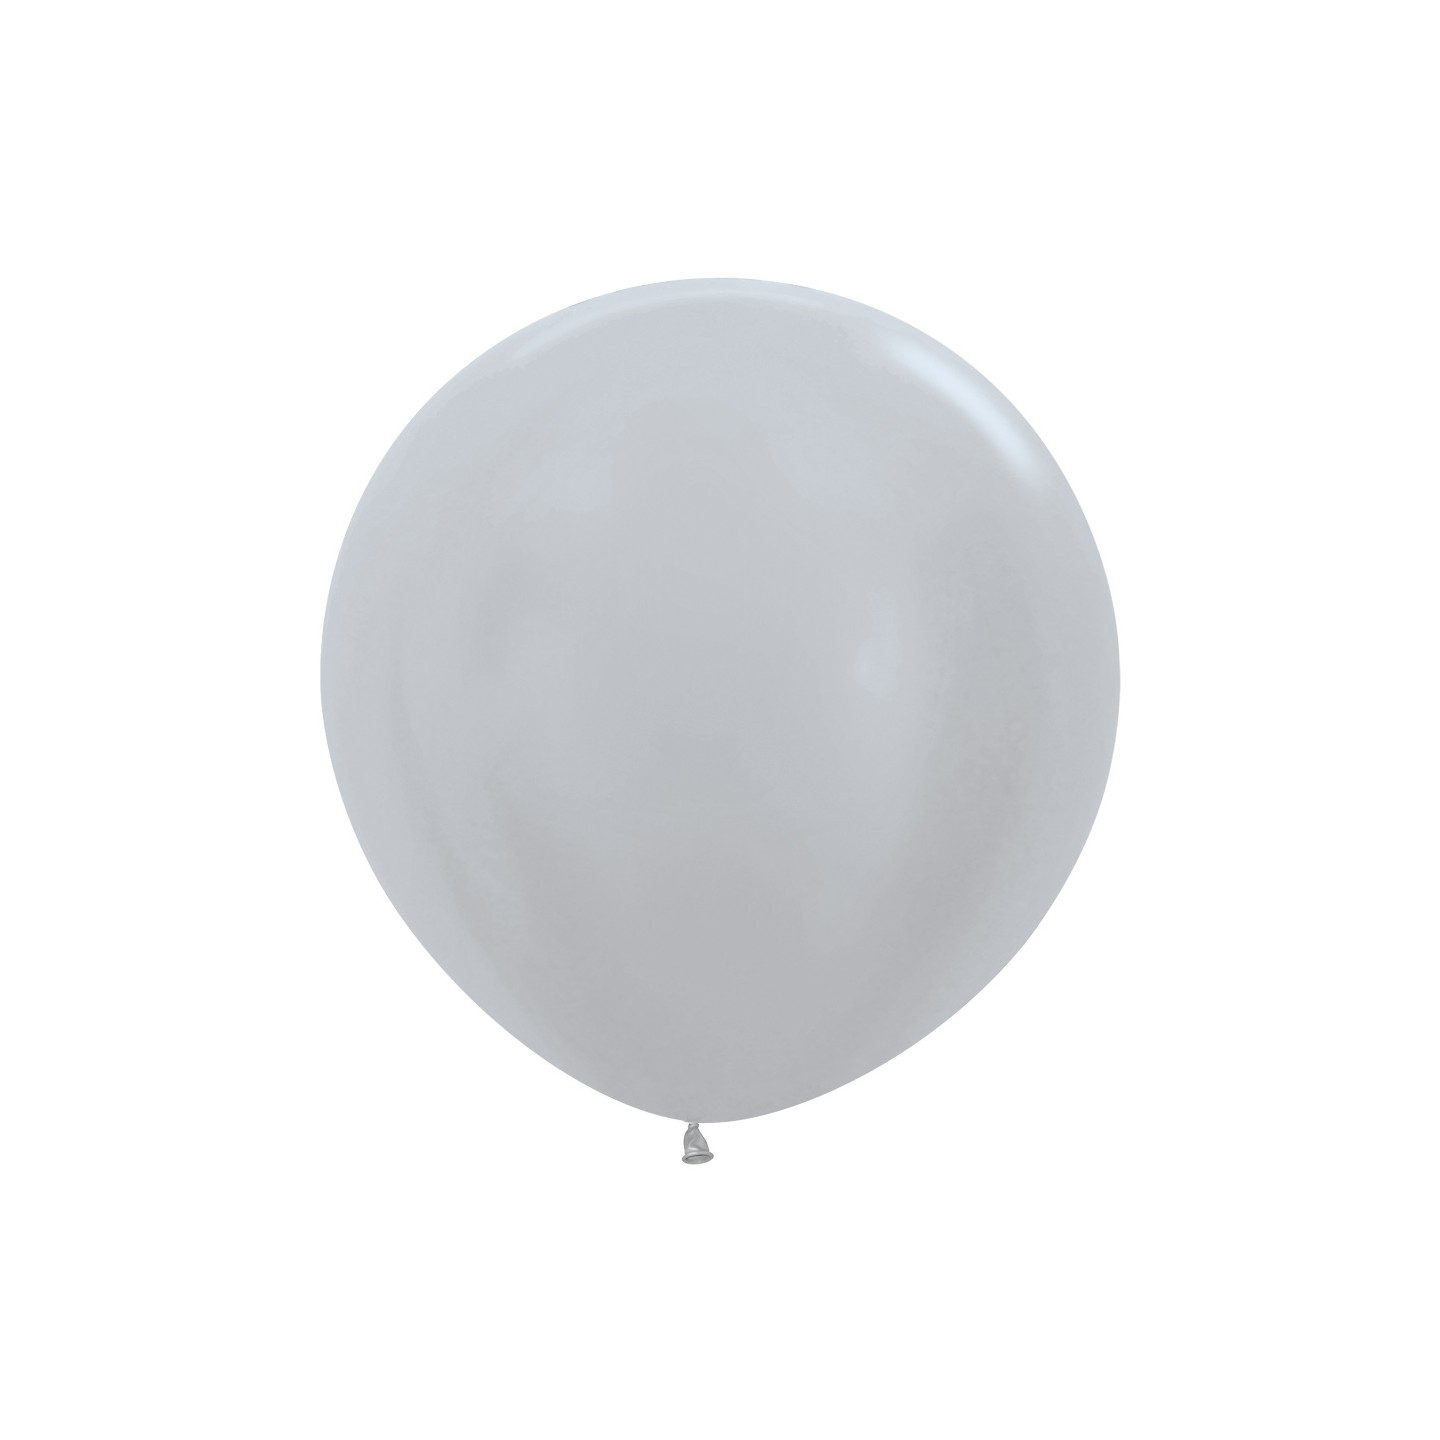 xl grote ballon zilver sempertex